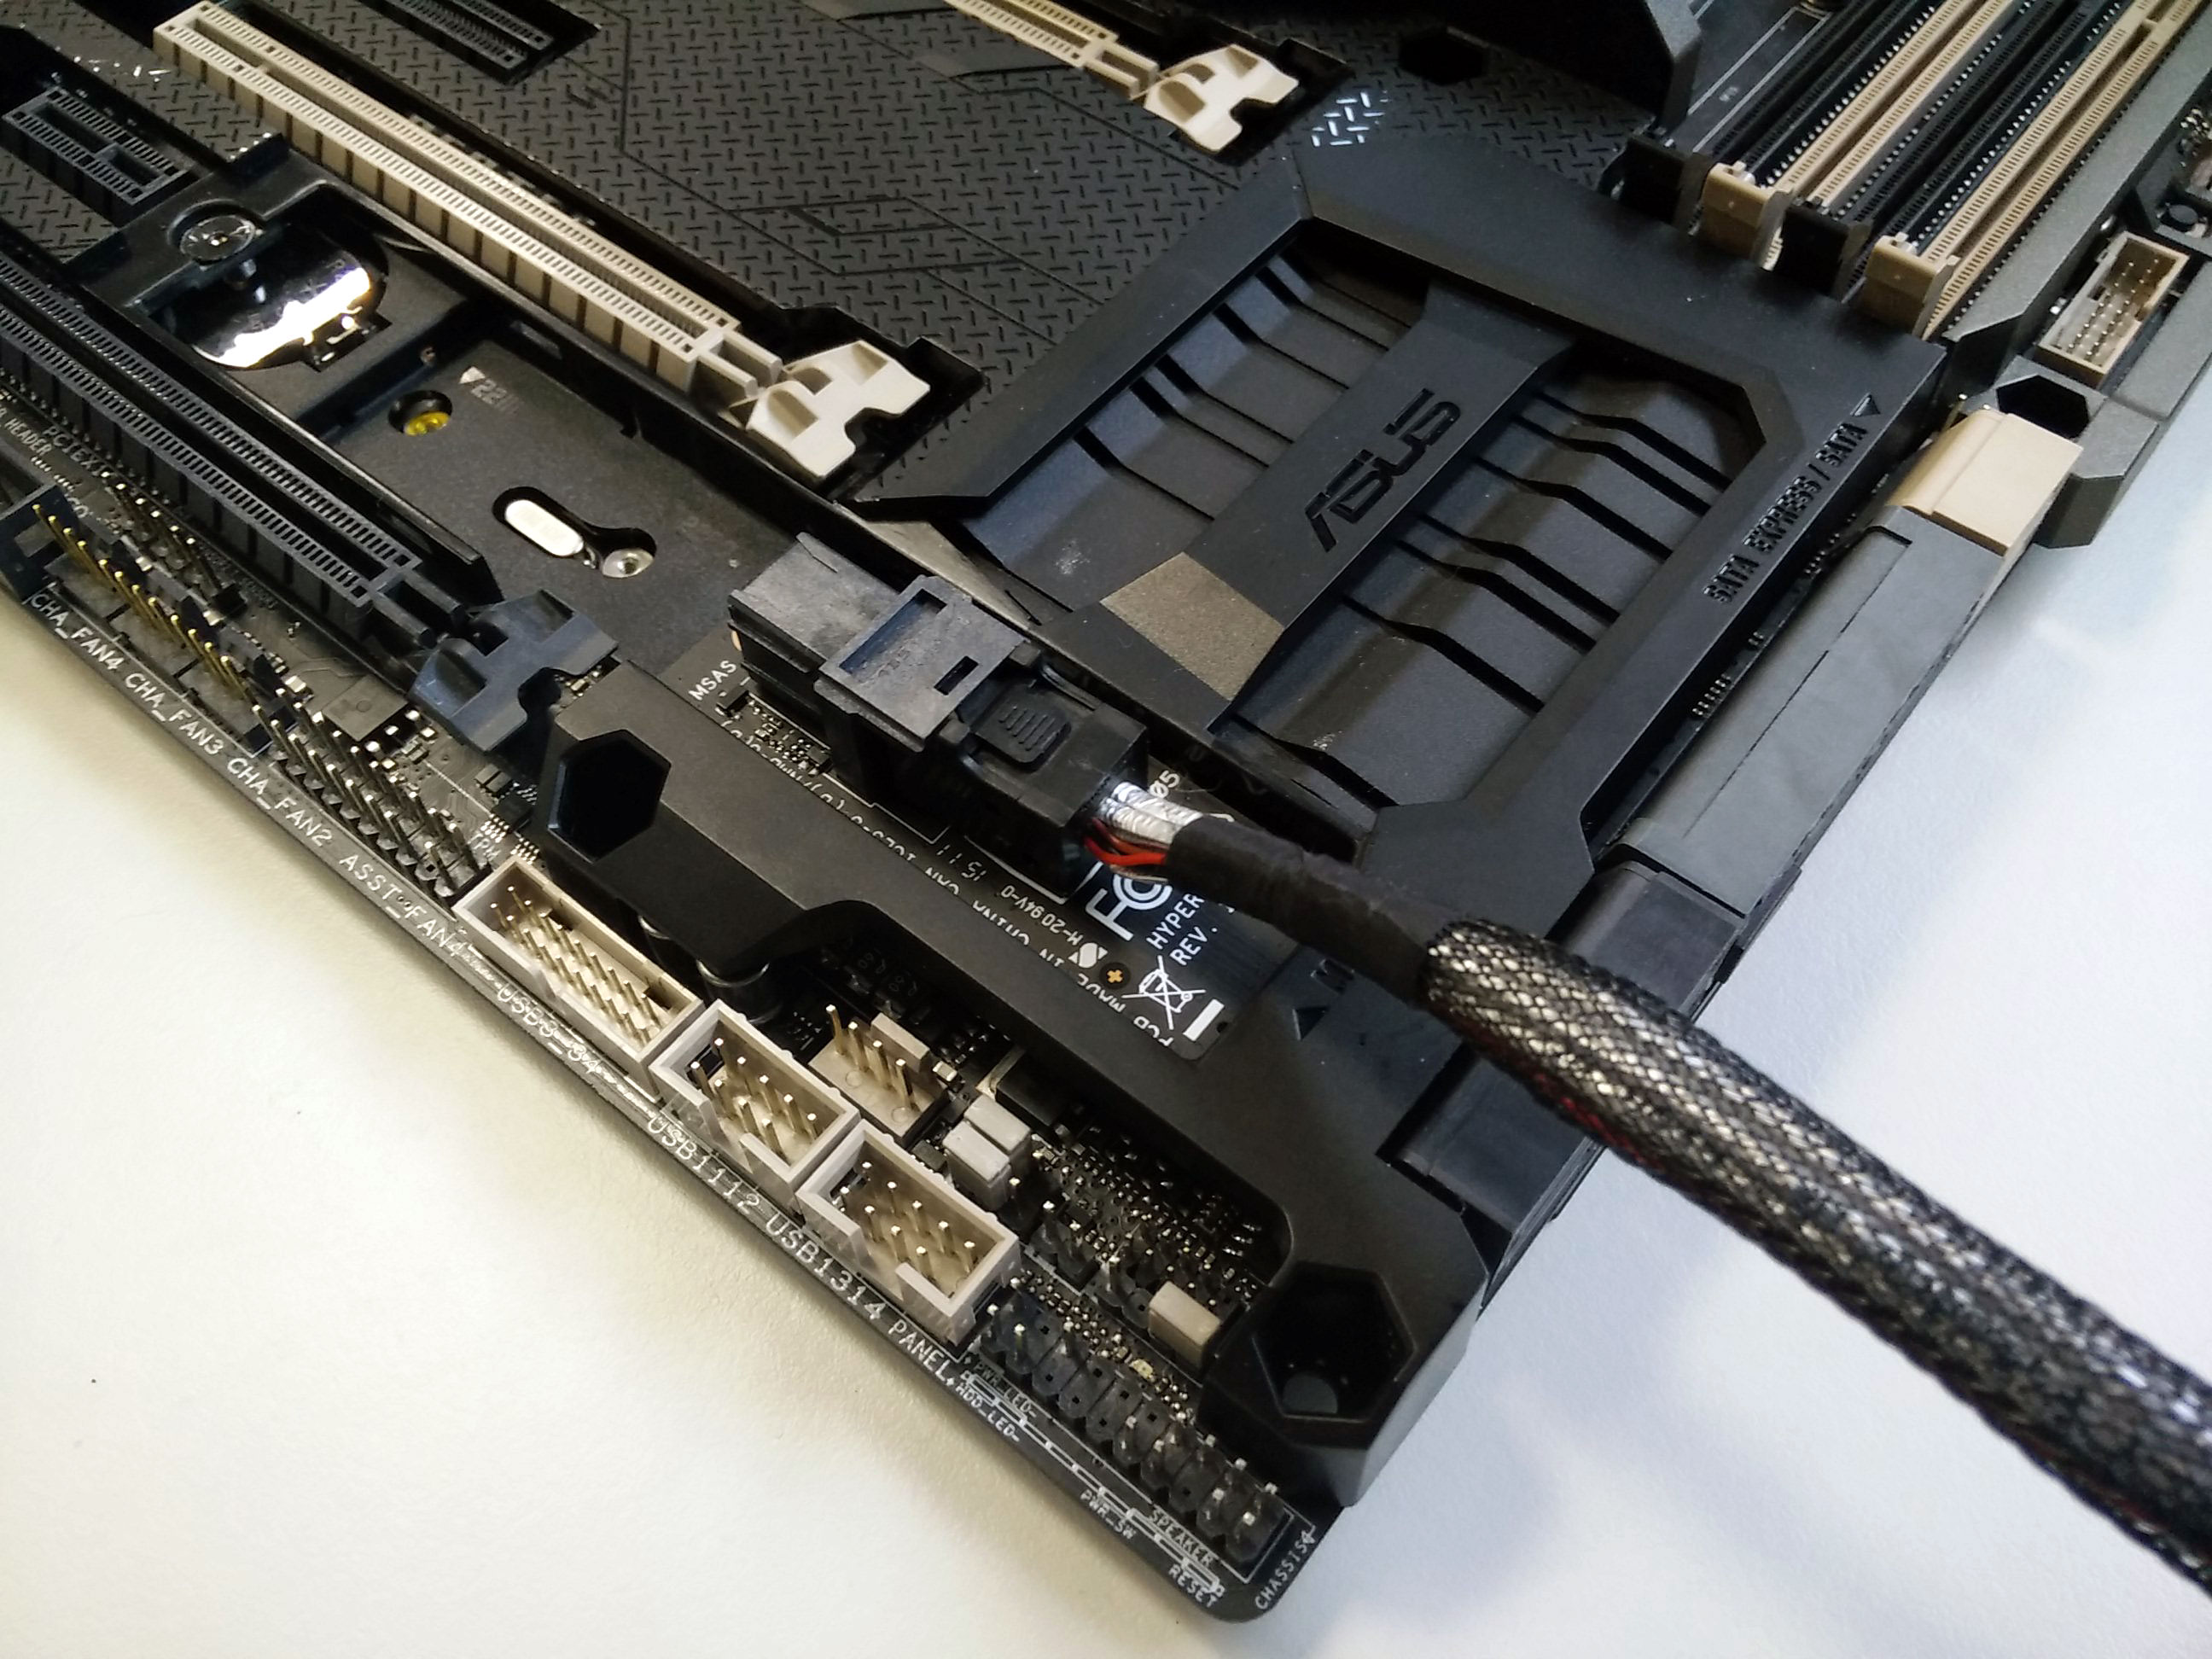 Immagine pubblicata in relazione al seguente contenuto: ASUS lancia l'adapter Hyper Kit per i nuovi SSD 750 NVMe di Intel | Nome immagine: news22423_ASUS-Hyper-Kit_3.jpg